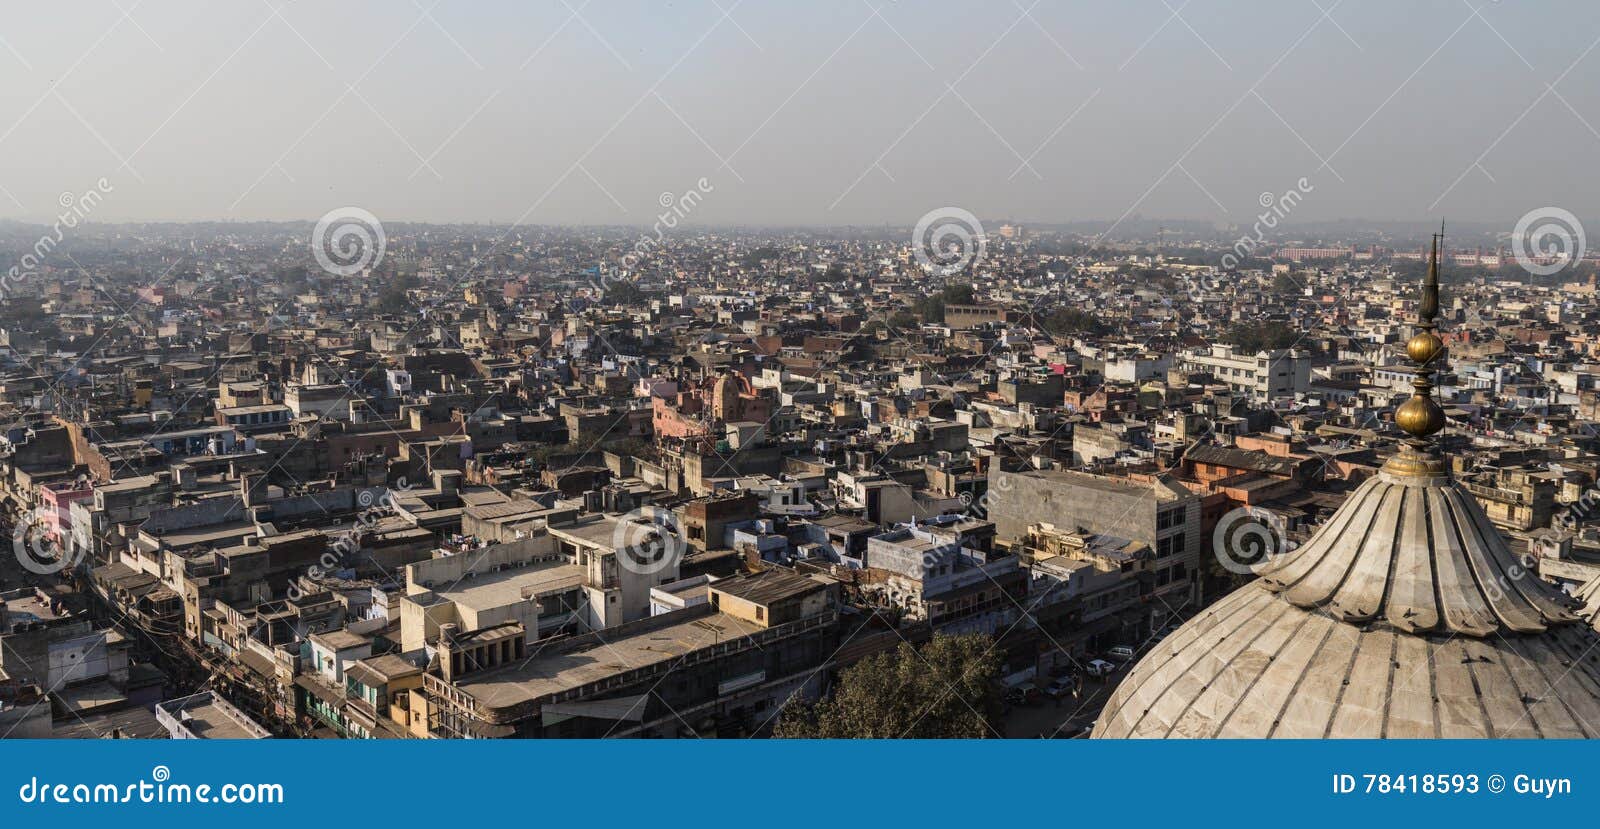 new delhi rooftops